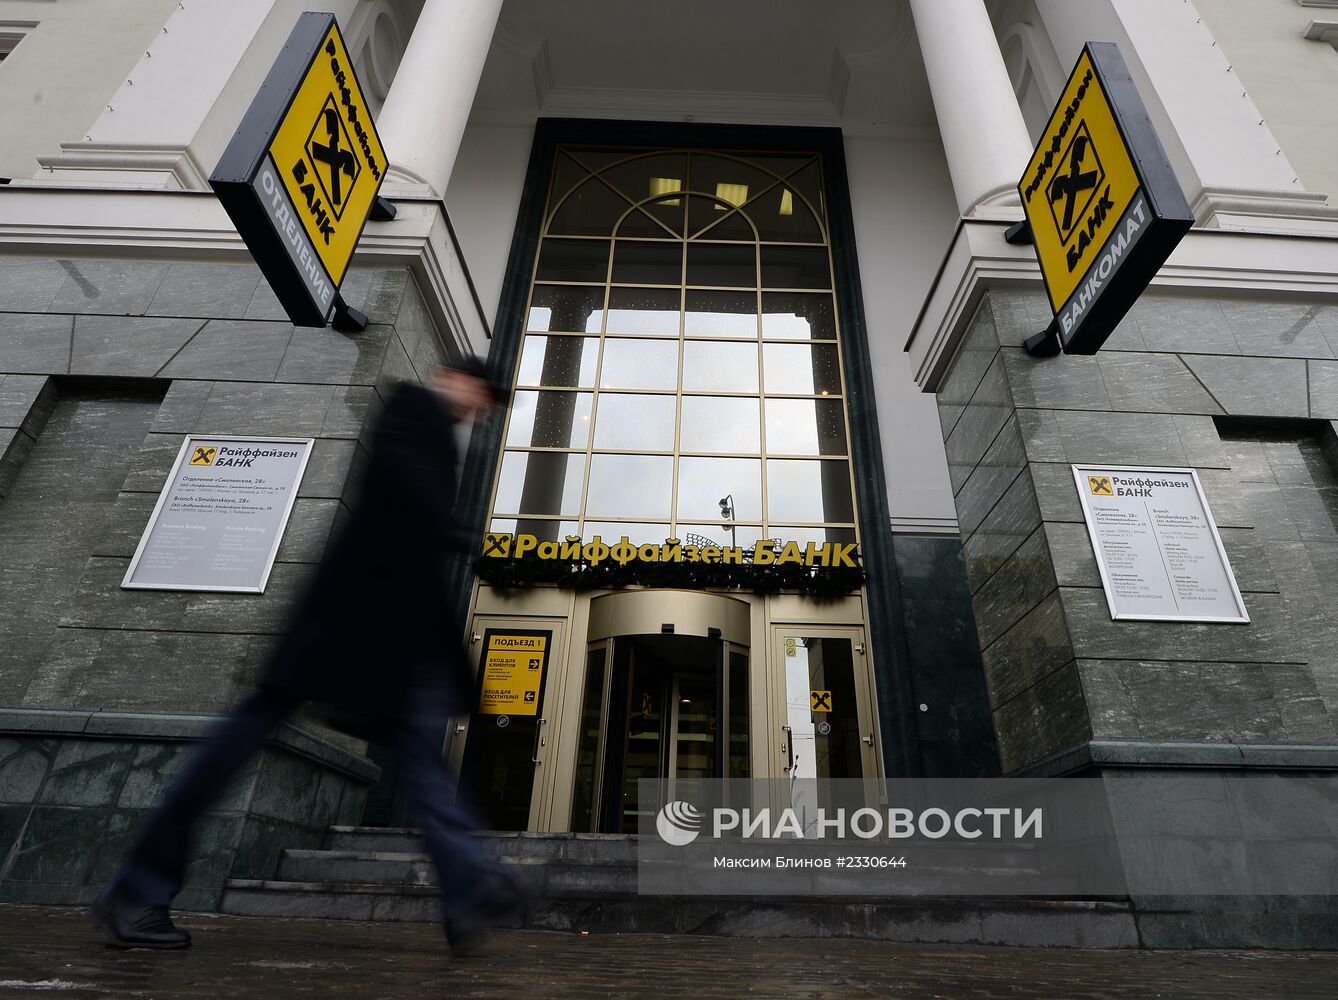 Офис банка "Райффайзен" в Москве